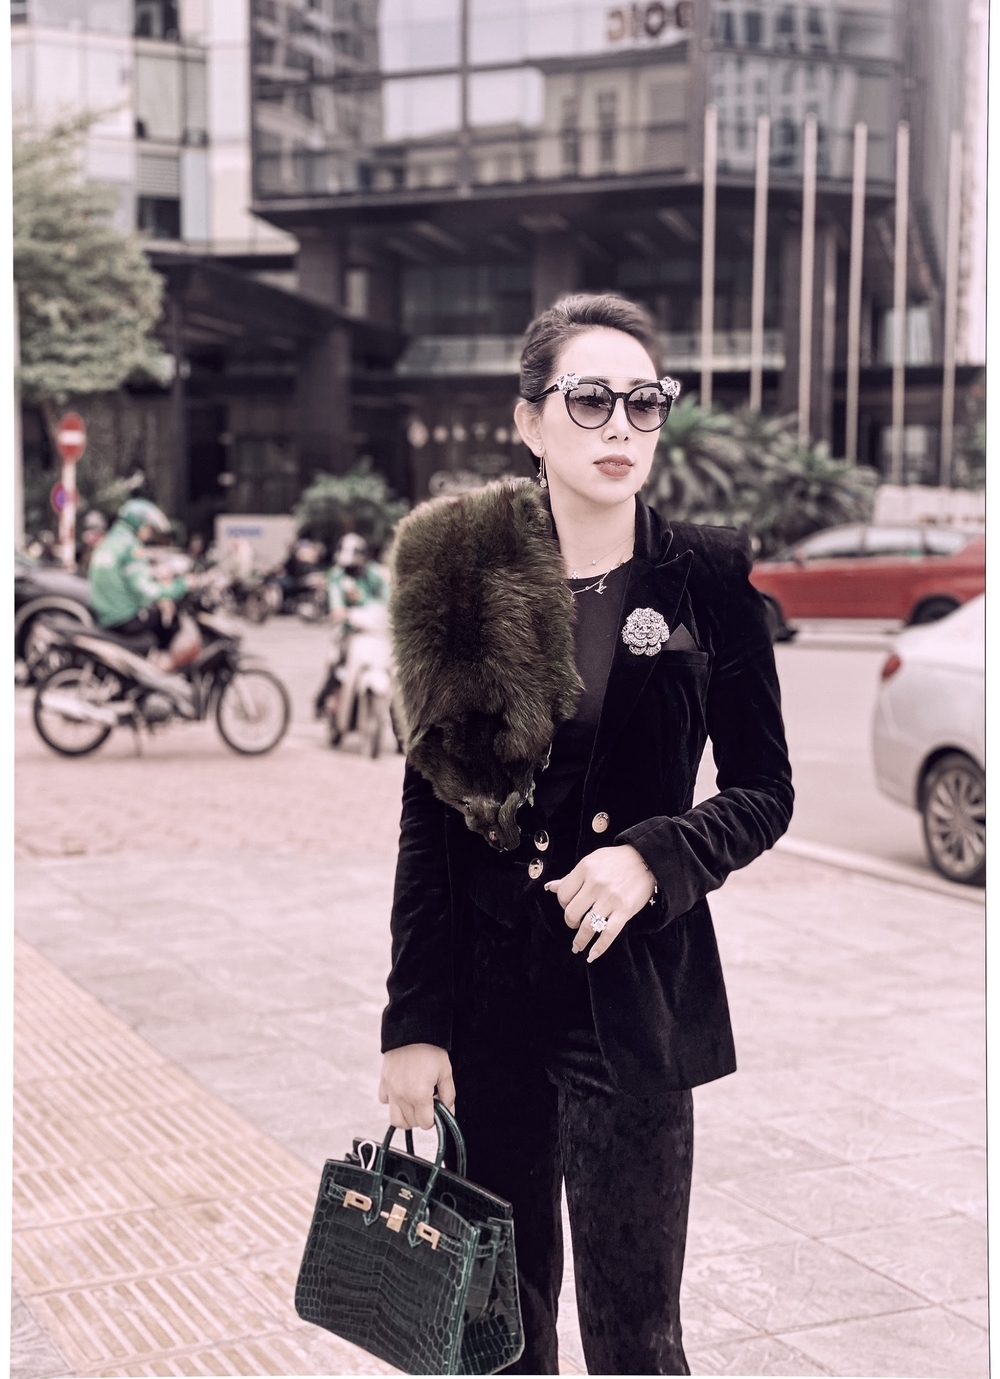 Nữ doanh nhân Phạm Quỳnh ấn tượng với streetstyle ngày đông lạnh